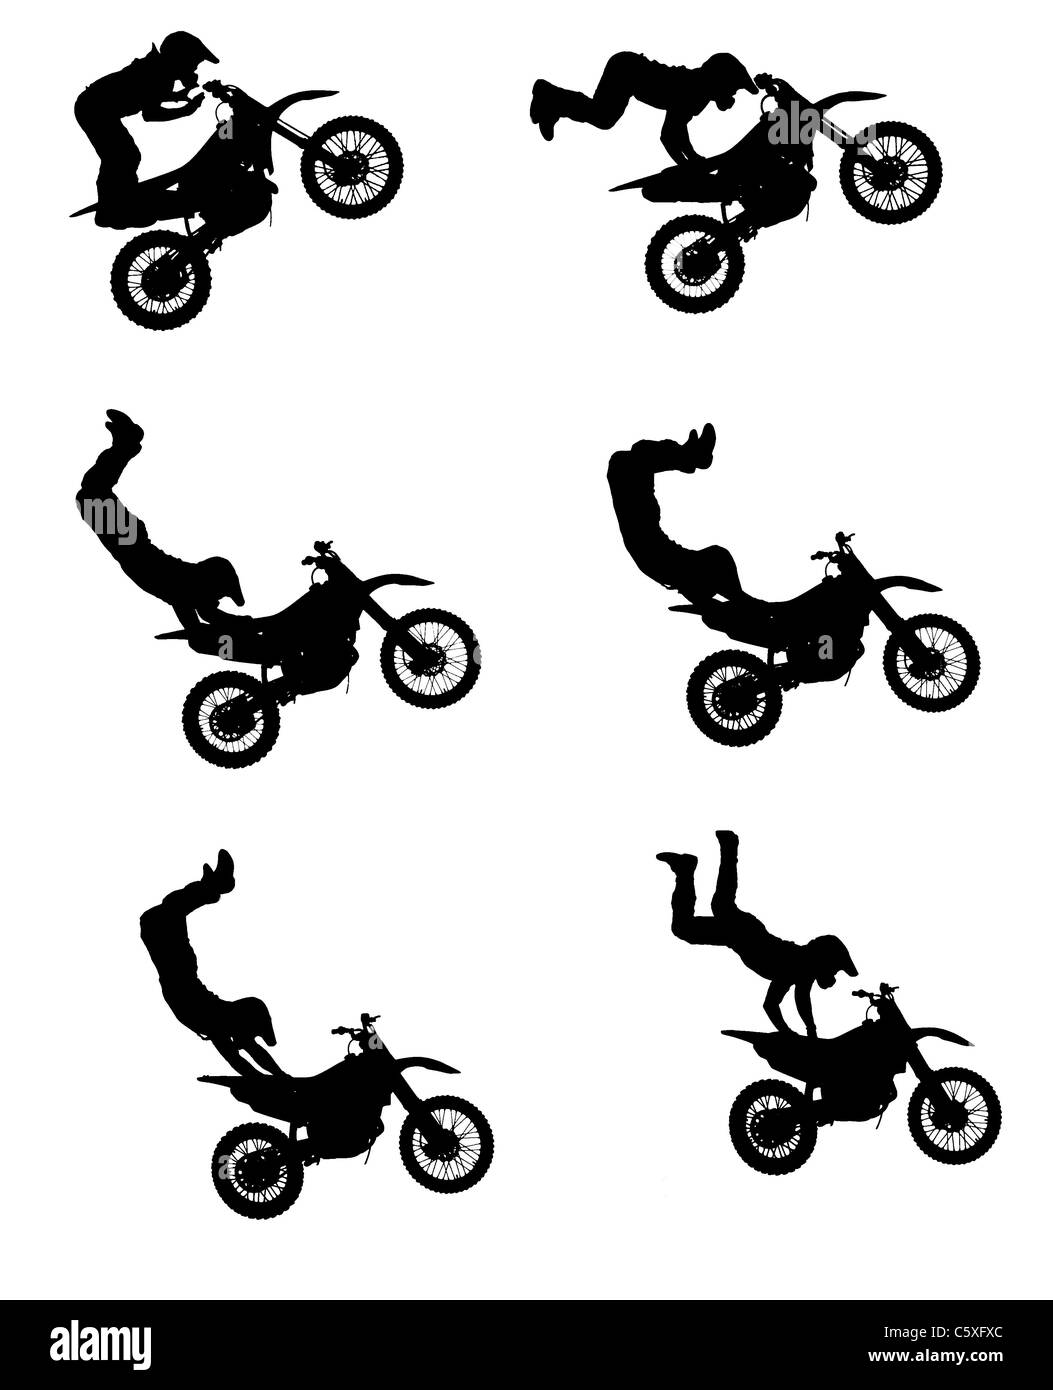 Silhouettes d'un freestyle motocross rider lors d'un stunt jump. Ces silhouettes sont faits à partir de différentes photos d'une cascade. Banque D'Images